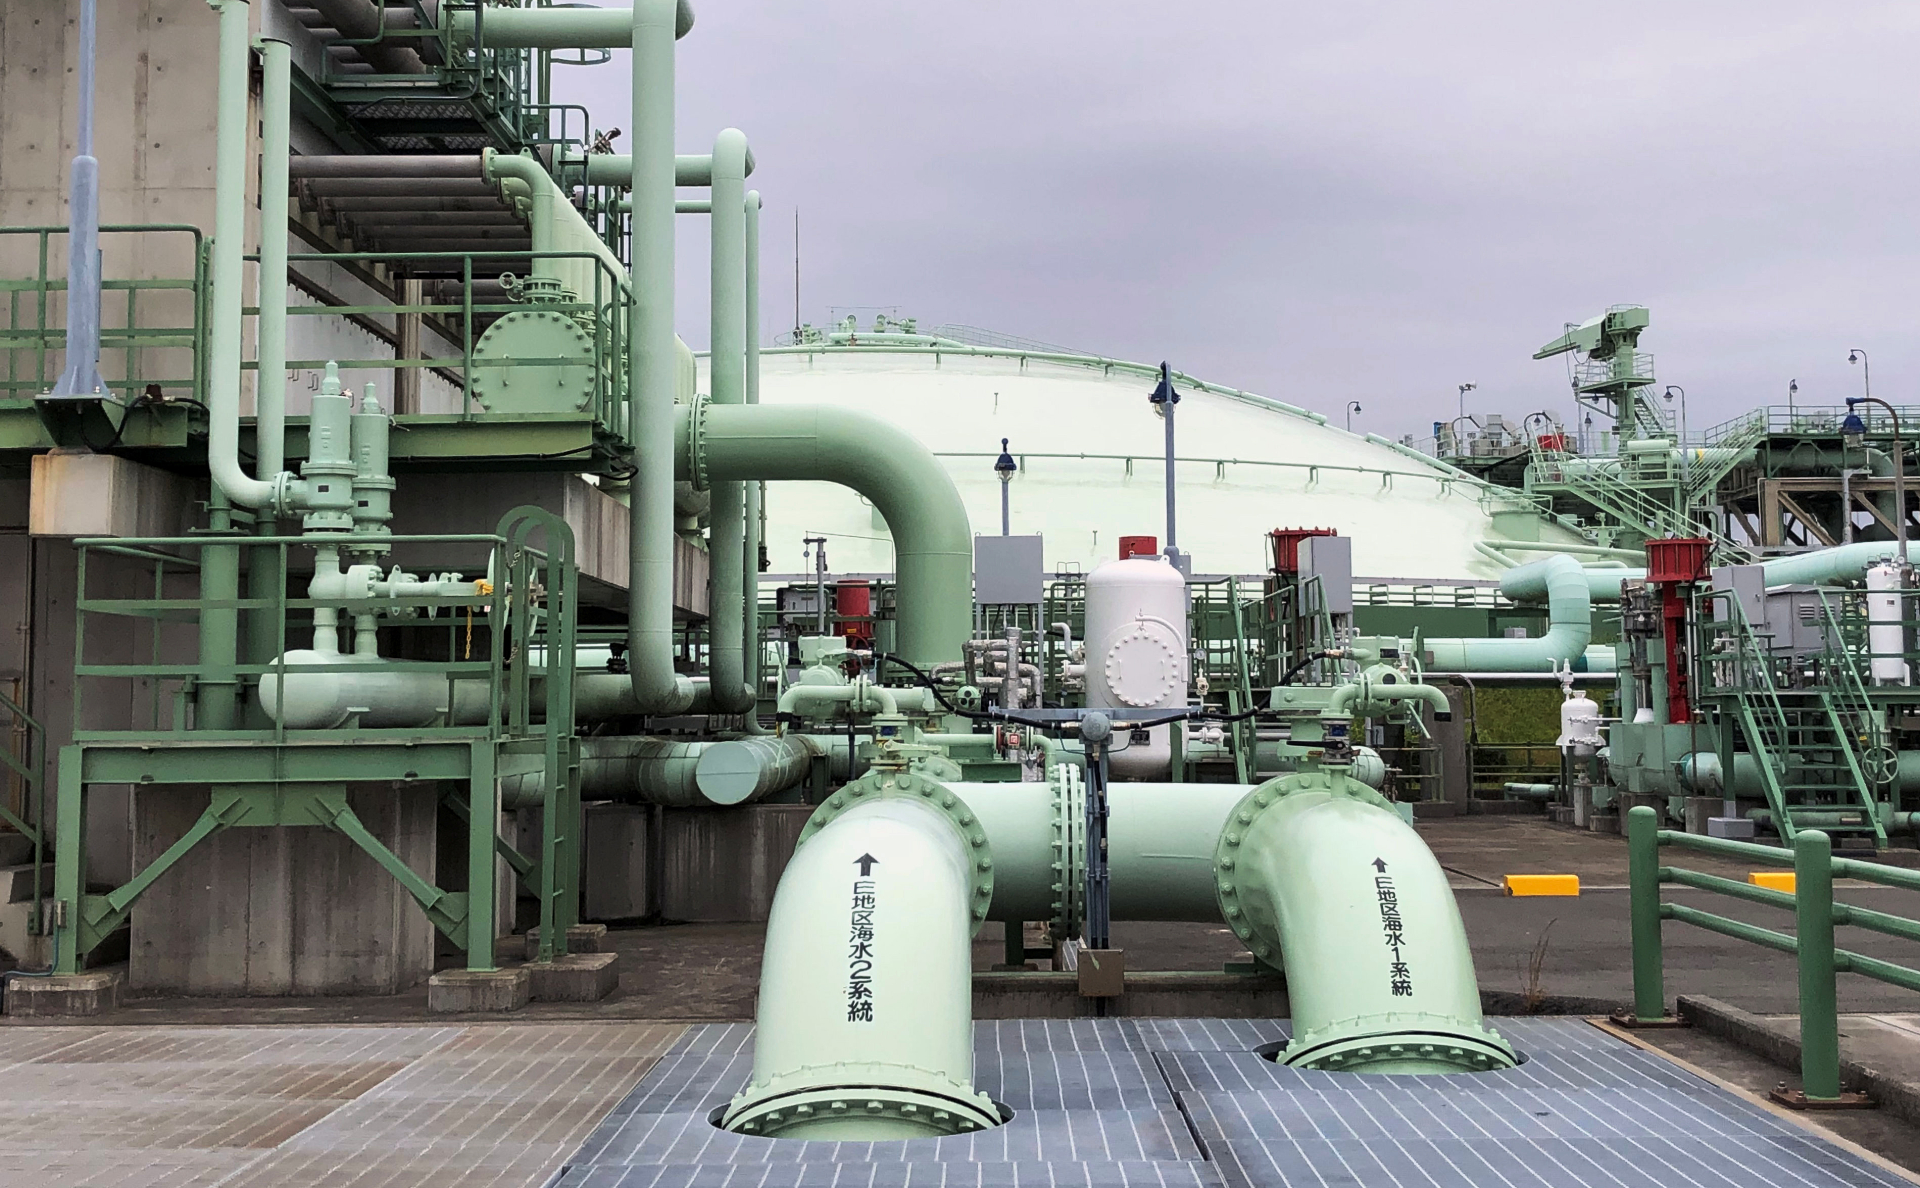 Kyodo узнал о готовности Японии поставлять газ в Европу в случае перебоев"/>













